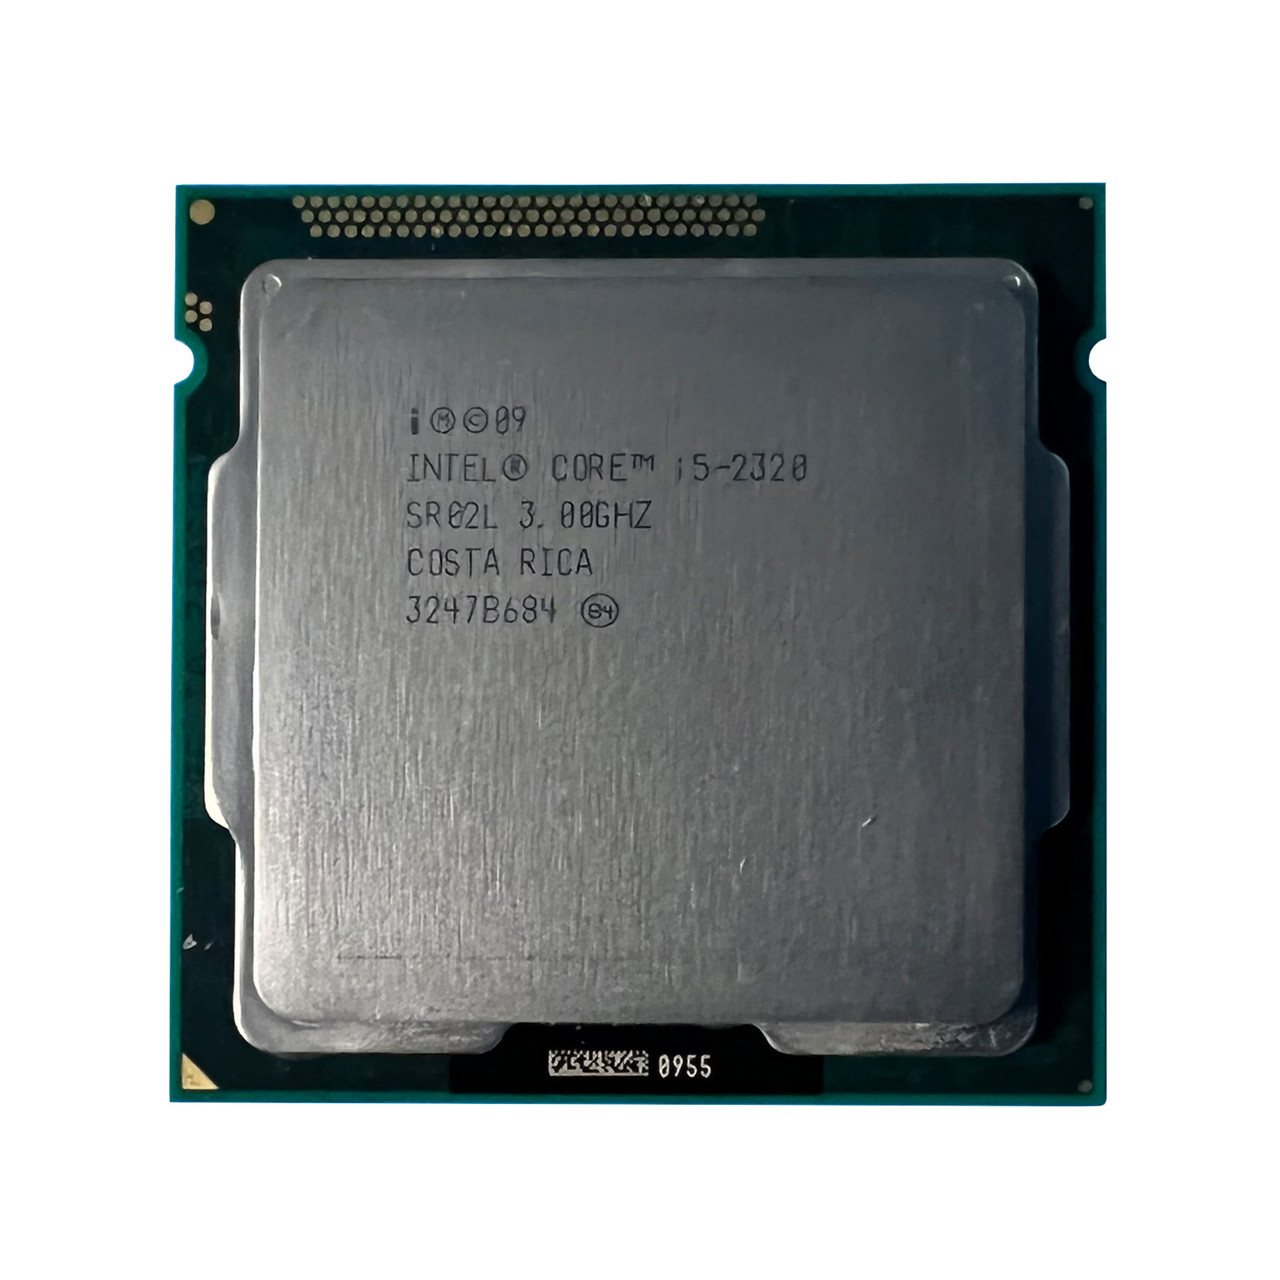 eiwit Industrieel Dierentuin s nachts Intel SR02L | i5-2320 QC 3.0Ghz 6MB 5GTs Processor - Serverworlds